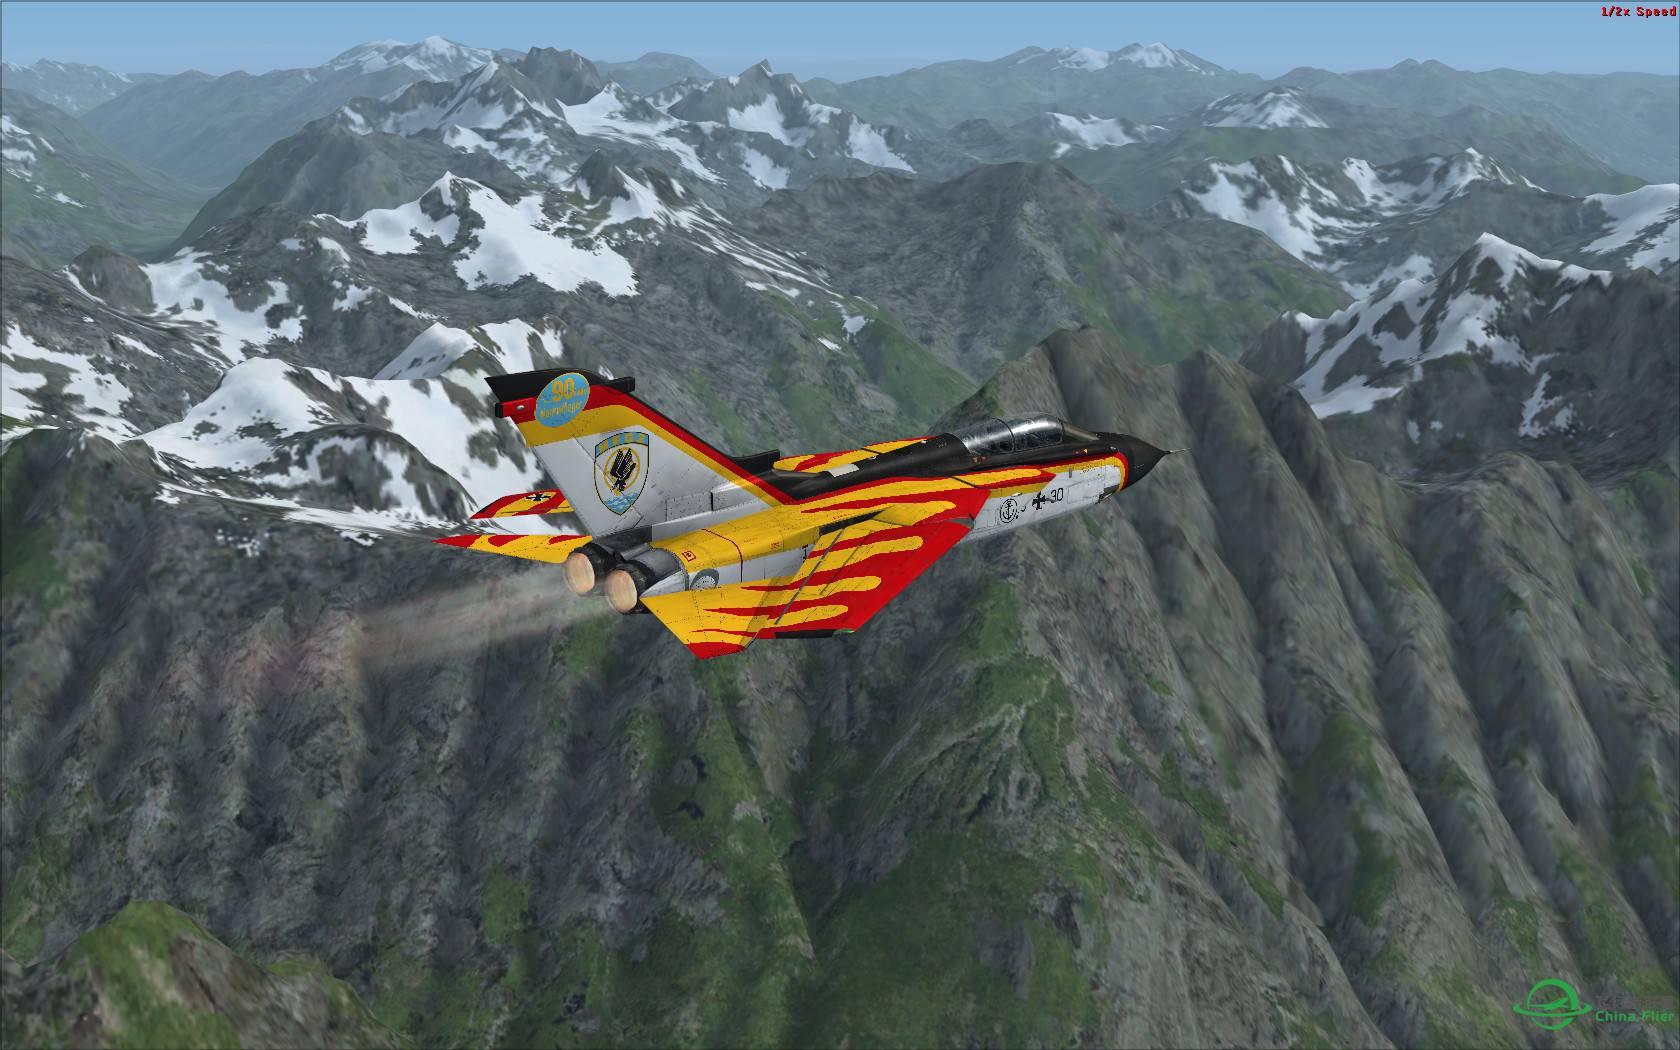 冰与火之歌:最新Just Flight狂风战机火红涂装与蓝色北美冰...-4126 